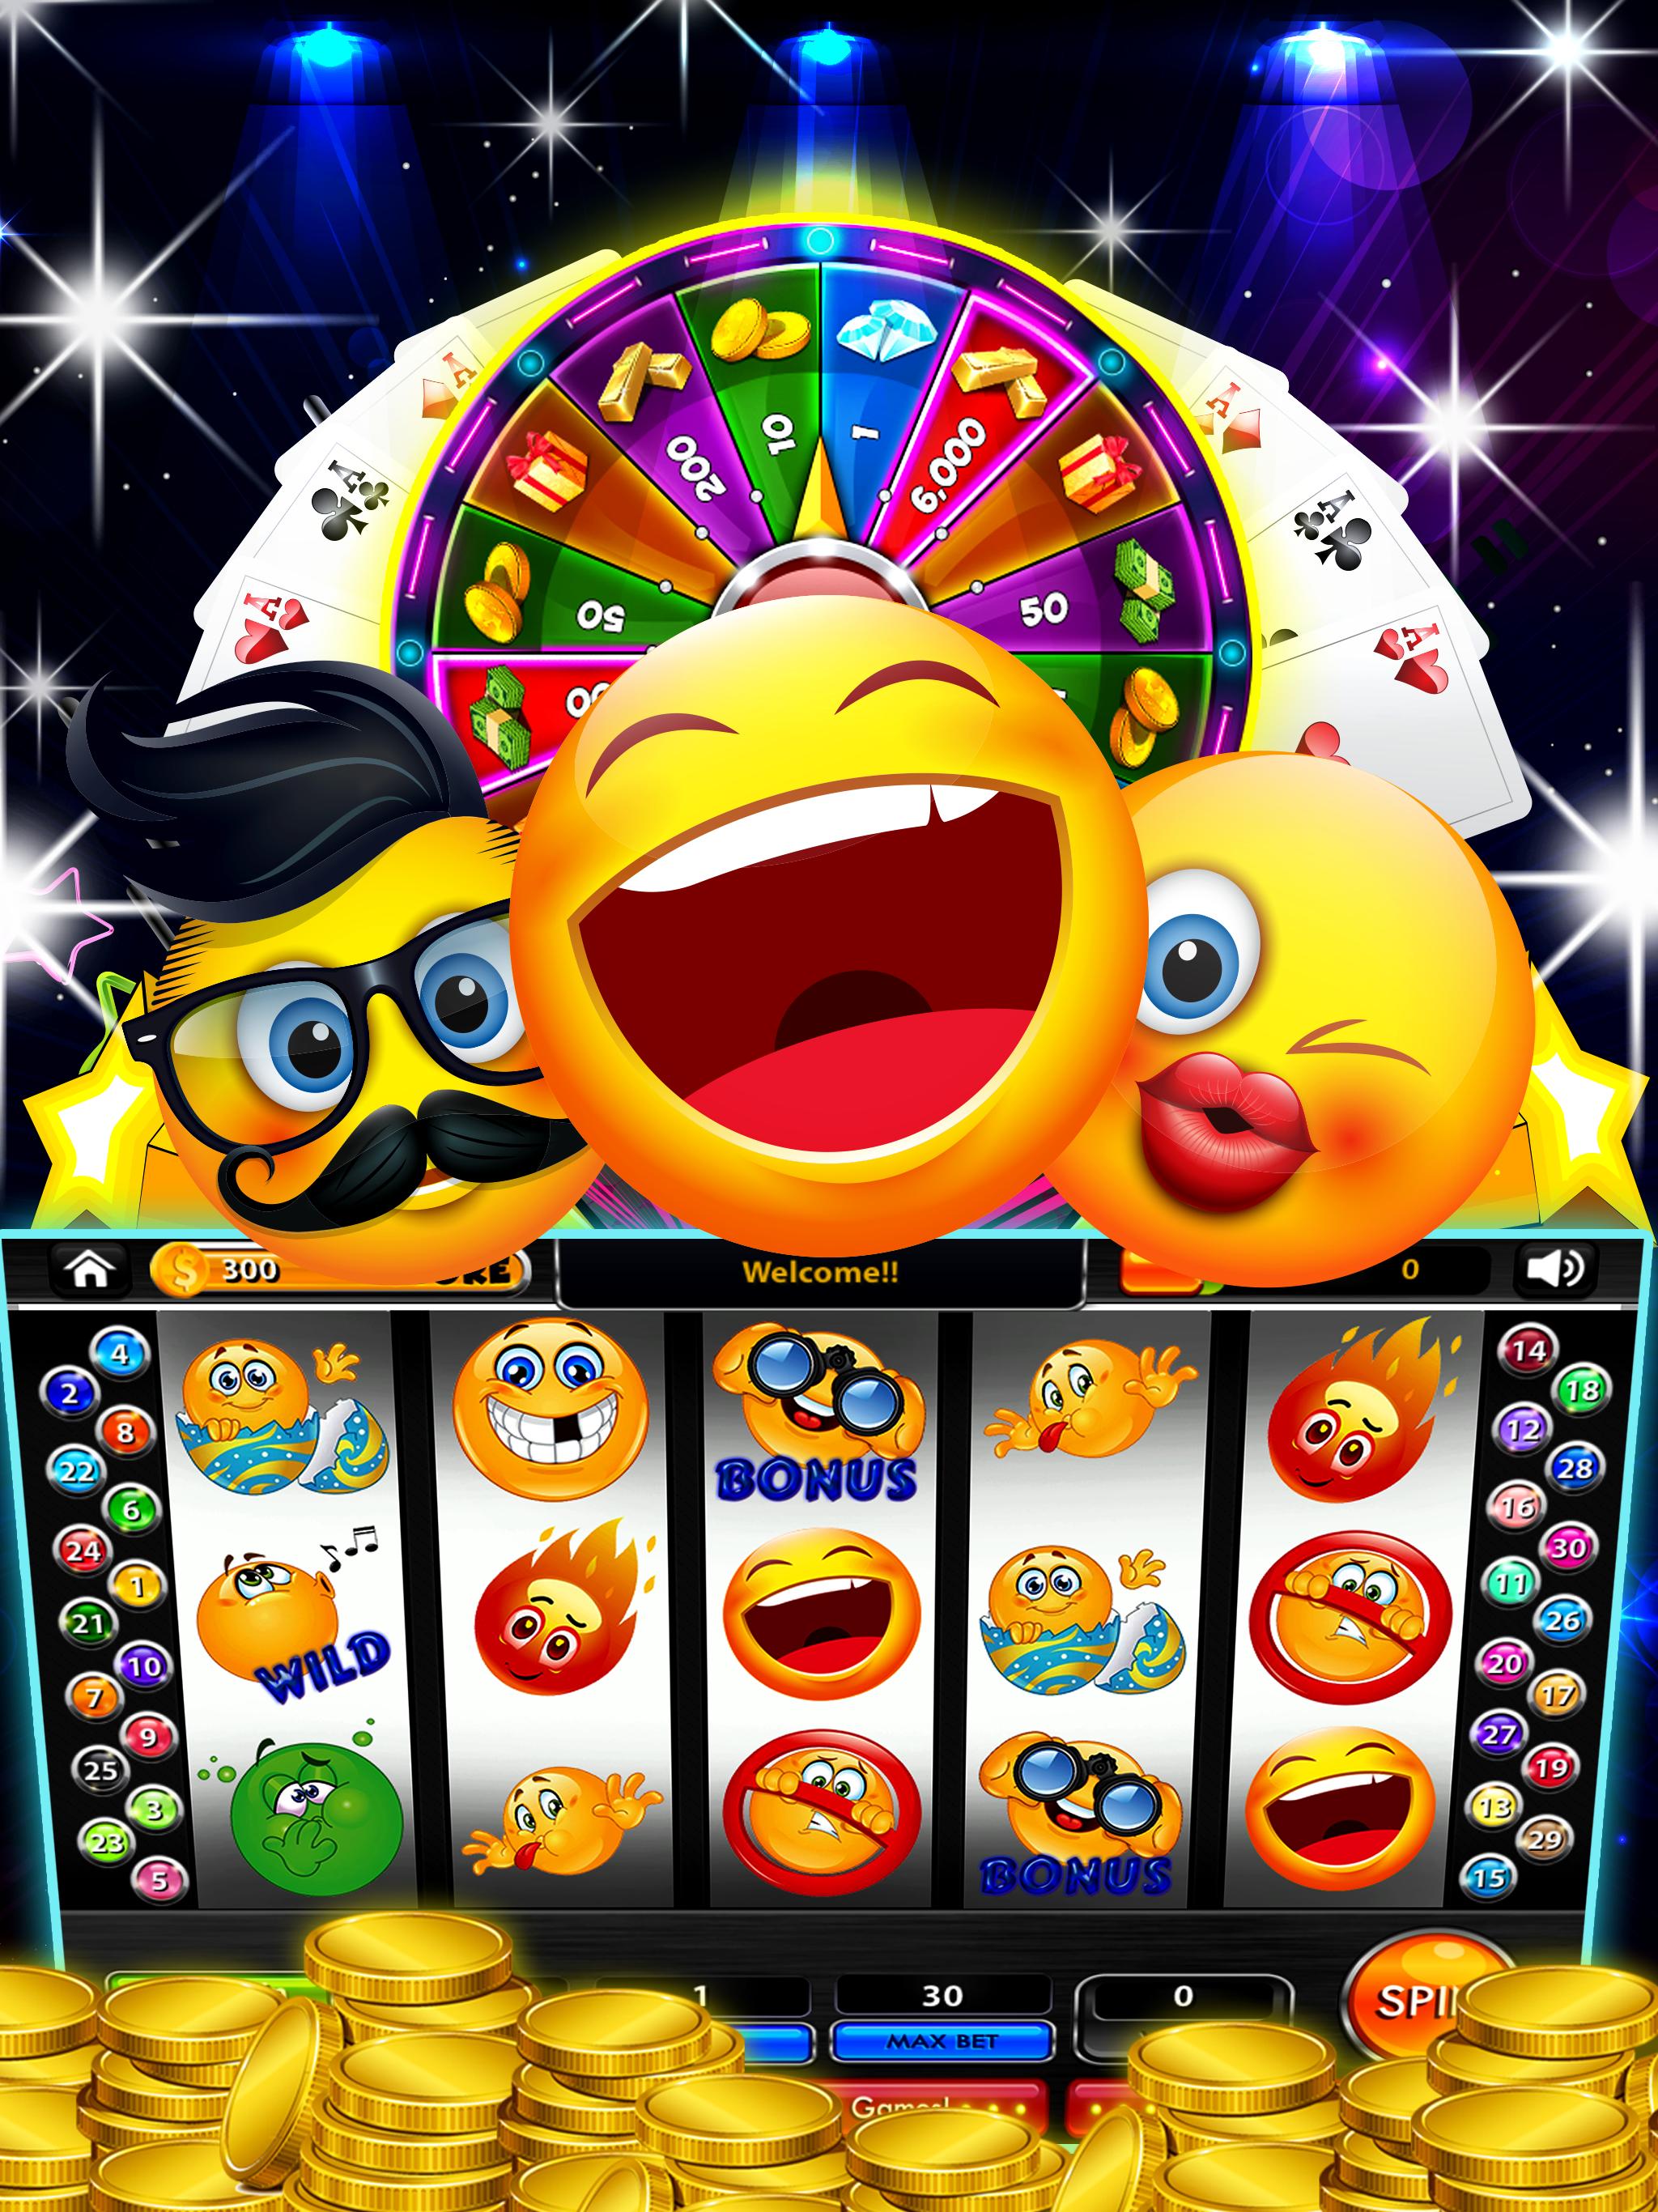 Casino Emoji